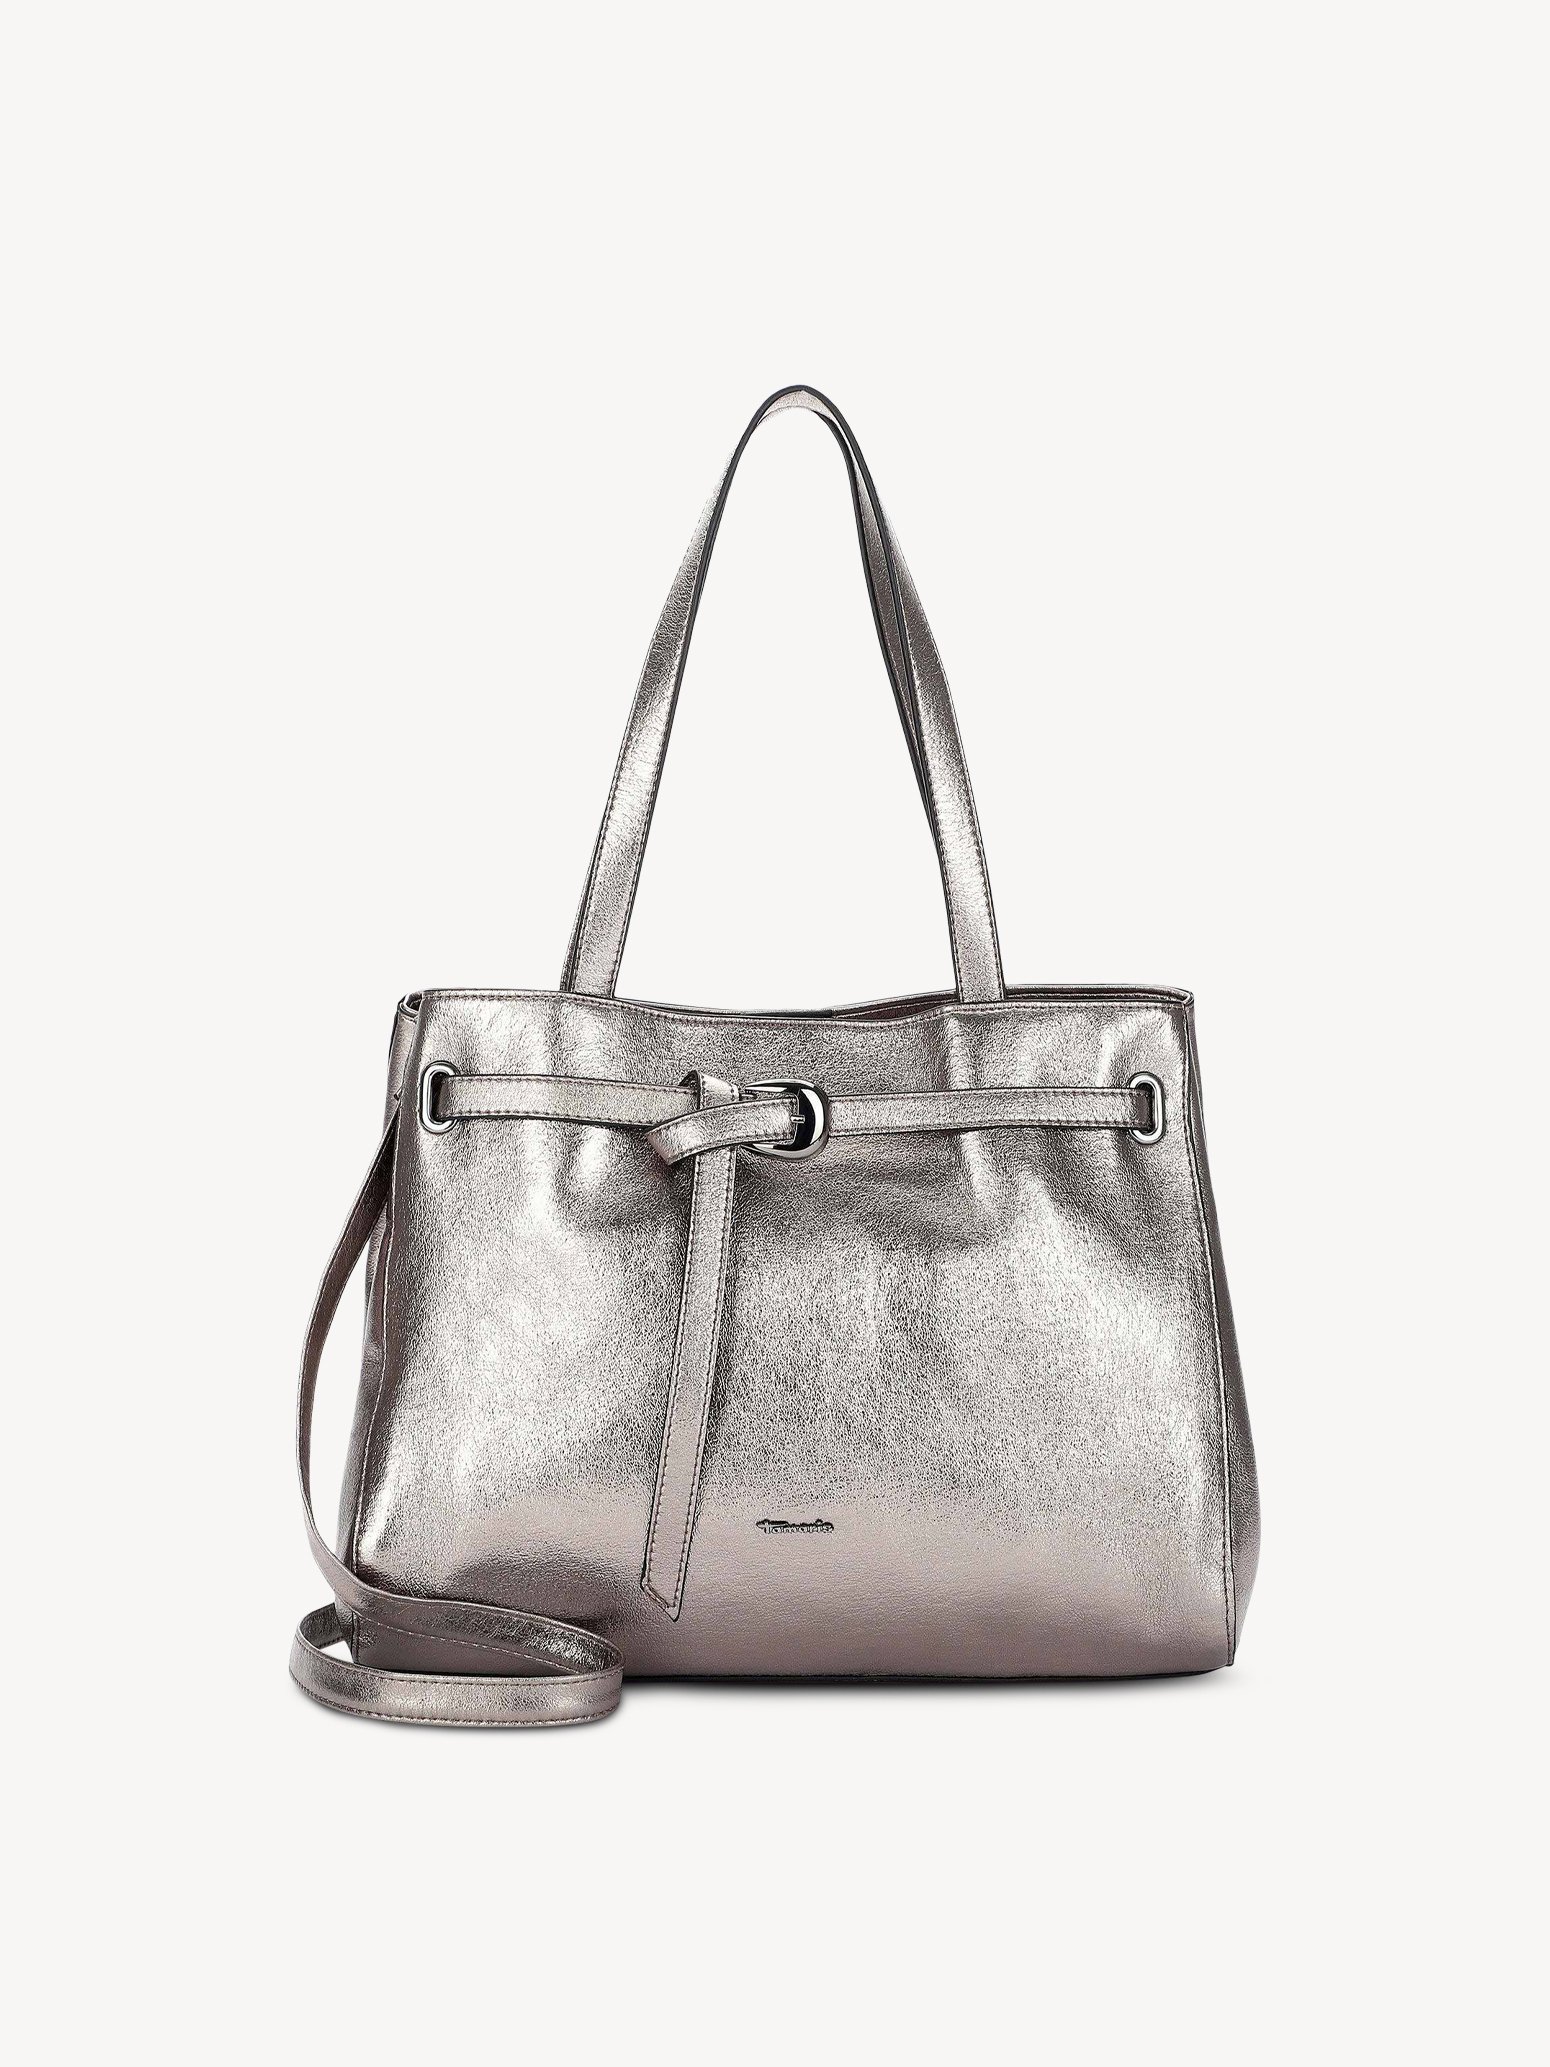 bag - silver 30632-833-1: Buy Tamaris bags online!